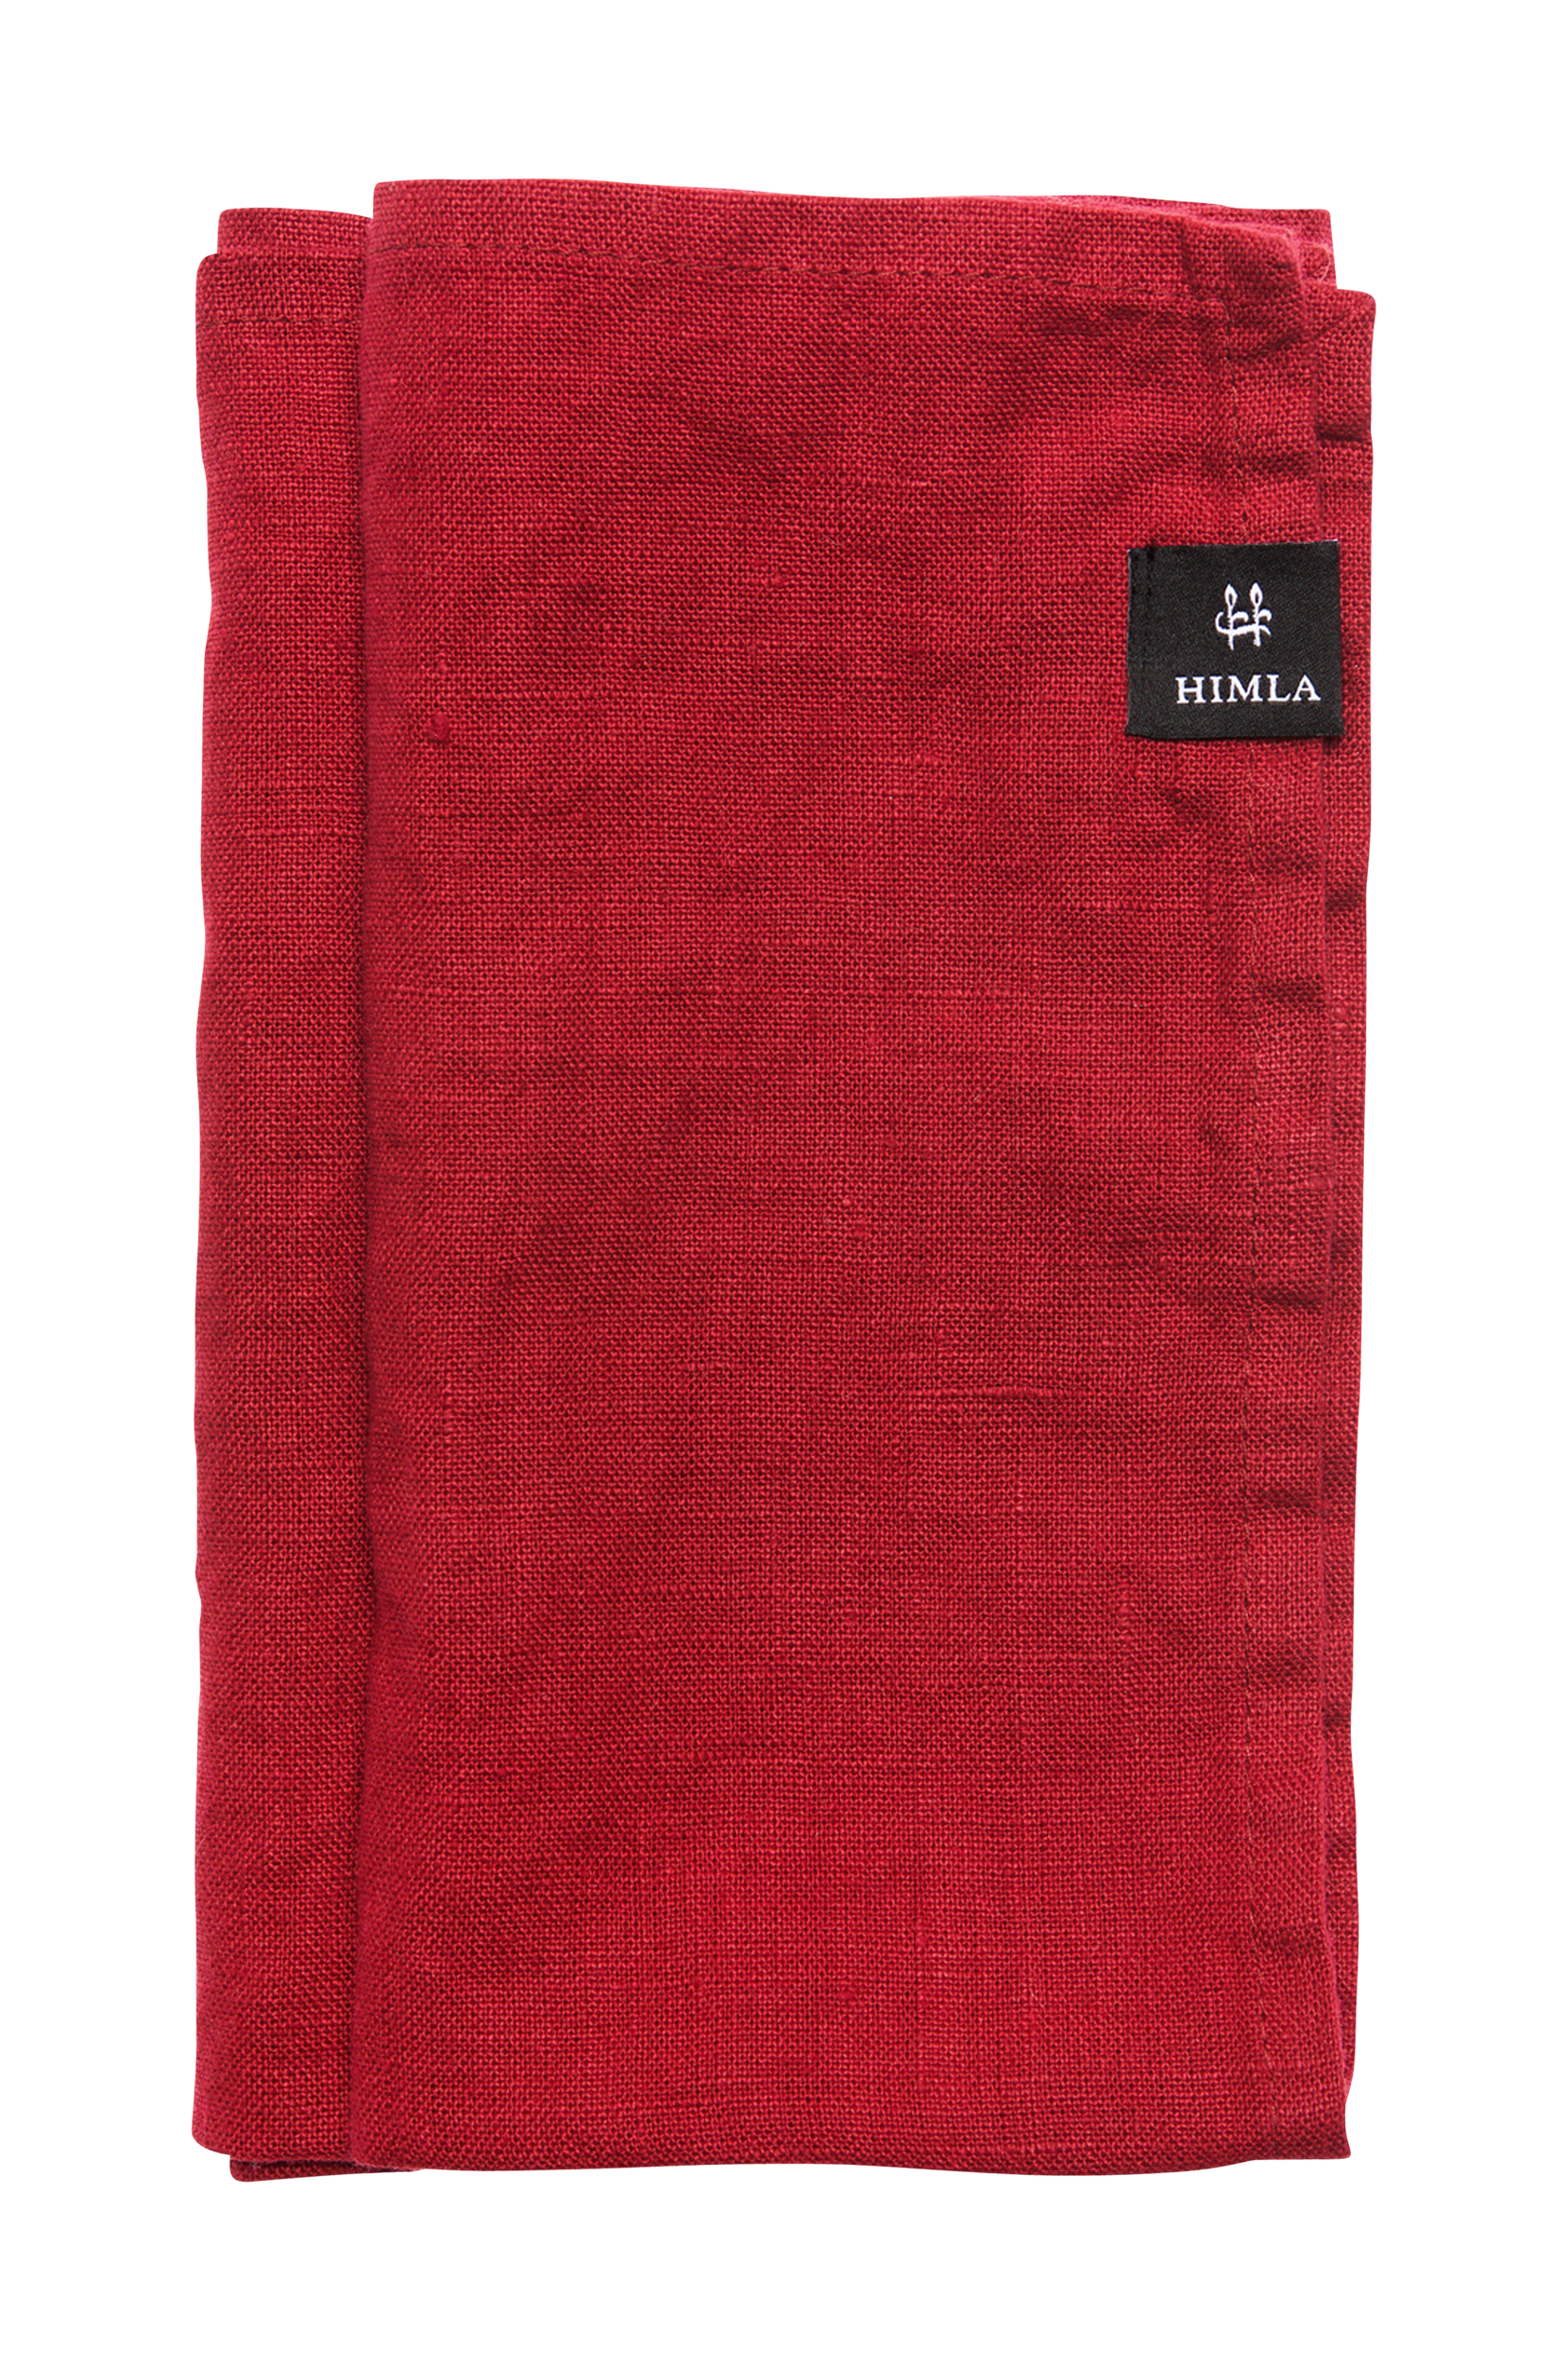 Himla - Servett Sunshine 45x45, 4 pack. - Röd